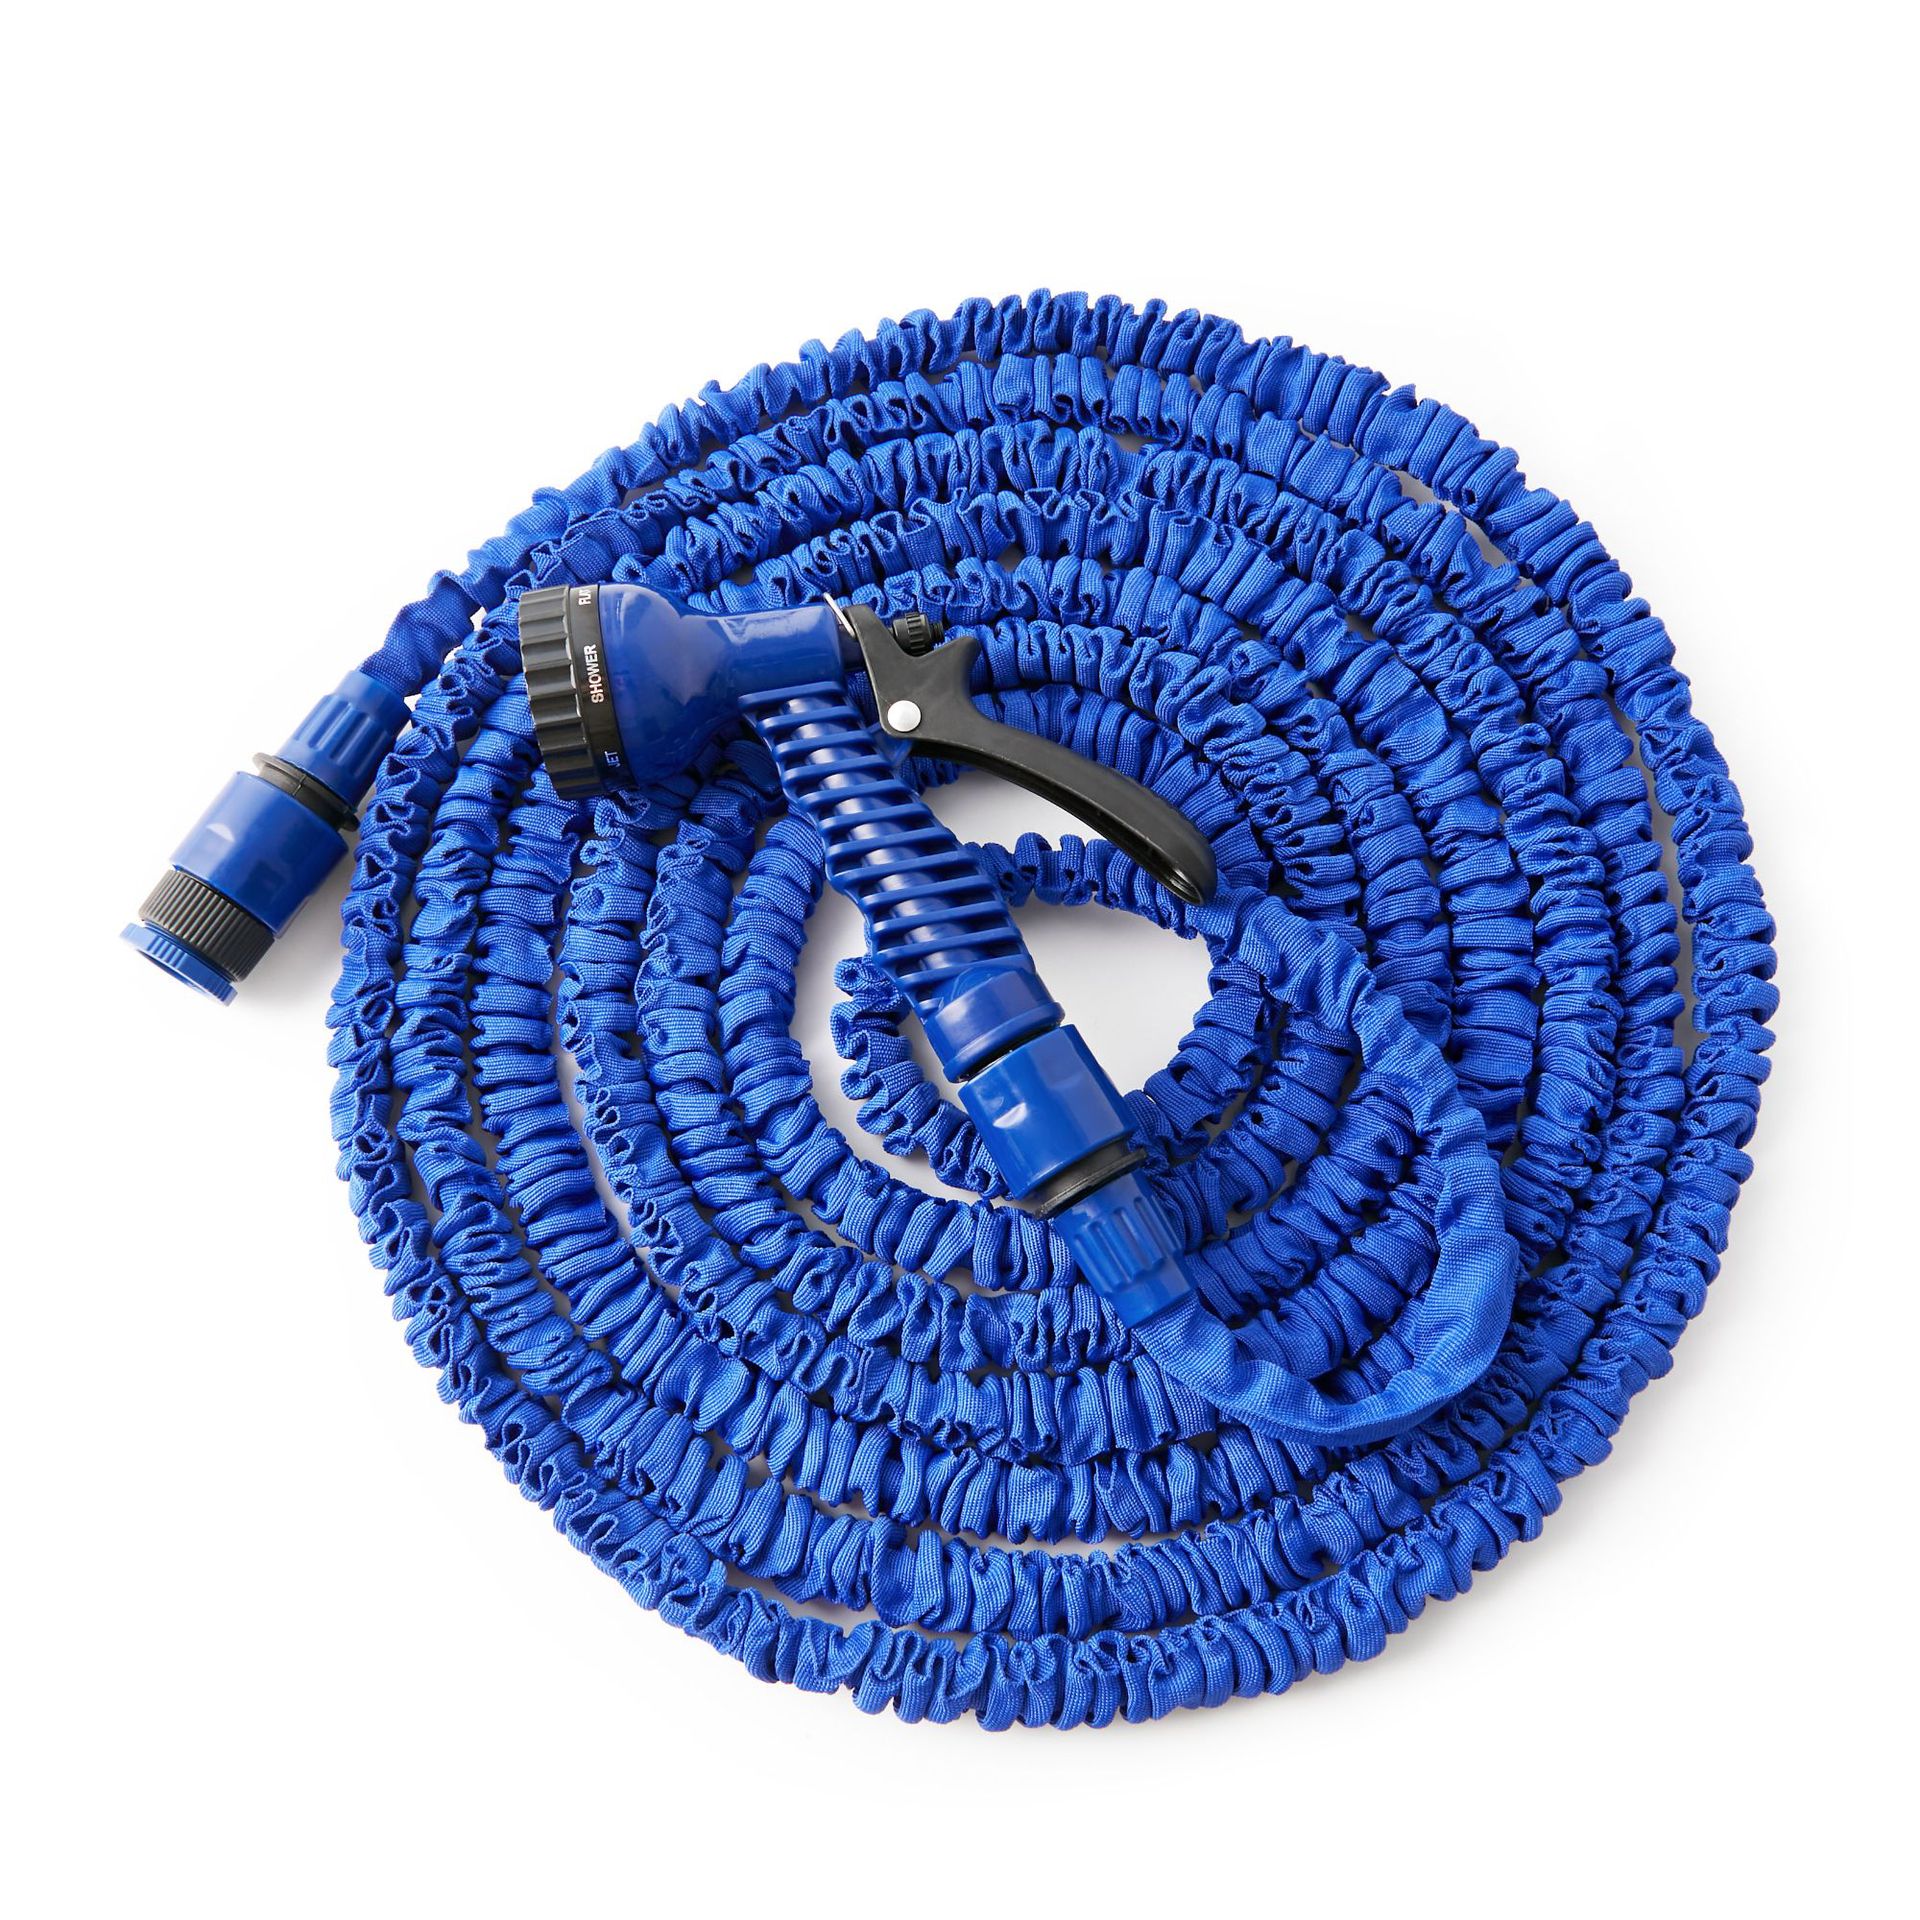 Tuinslang Blauw Uitbreidbaar Magic Flexibele Waterslang Plastic Slangen Pijp Met Spuitpistool Om Watering Wasstraat Spuiten 25FT-175FT